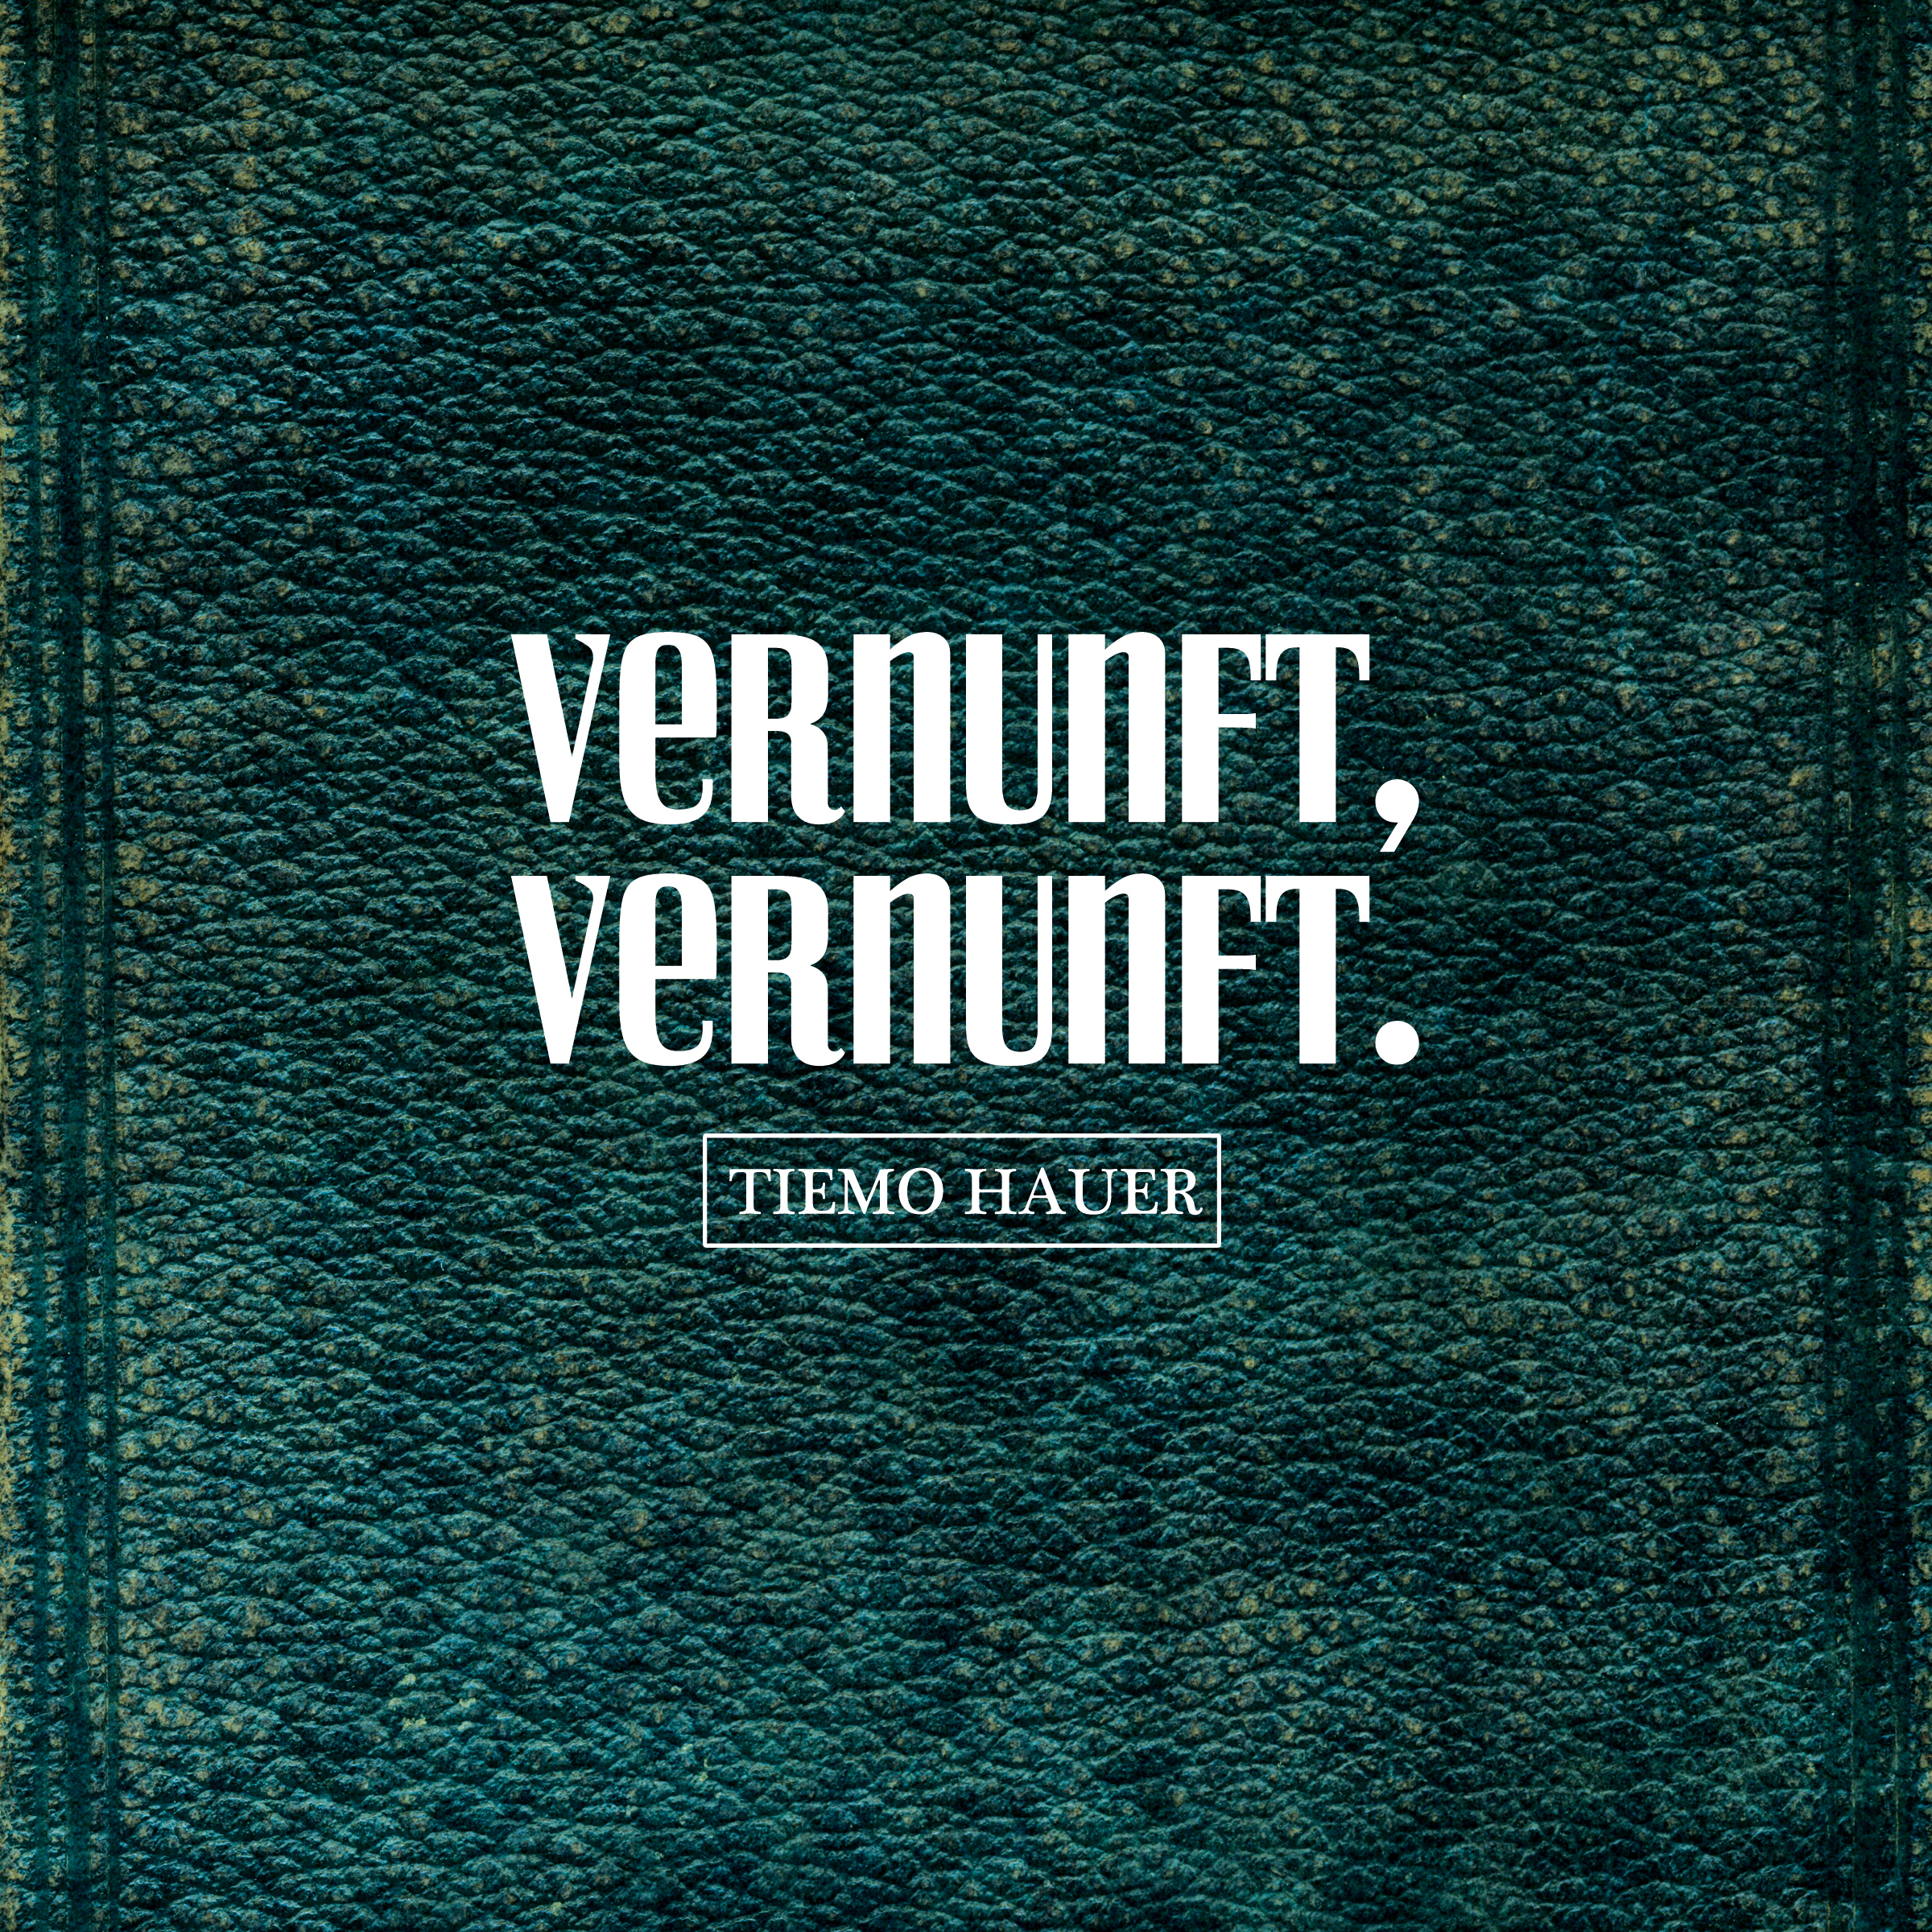 Tiemo Hauer - VERNUNFT, VERNUNFT. (Vinyl) 